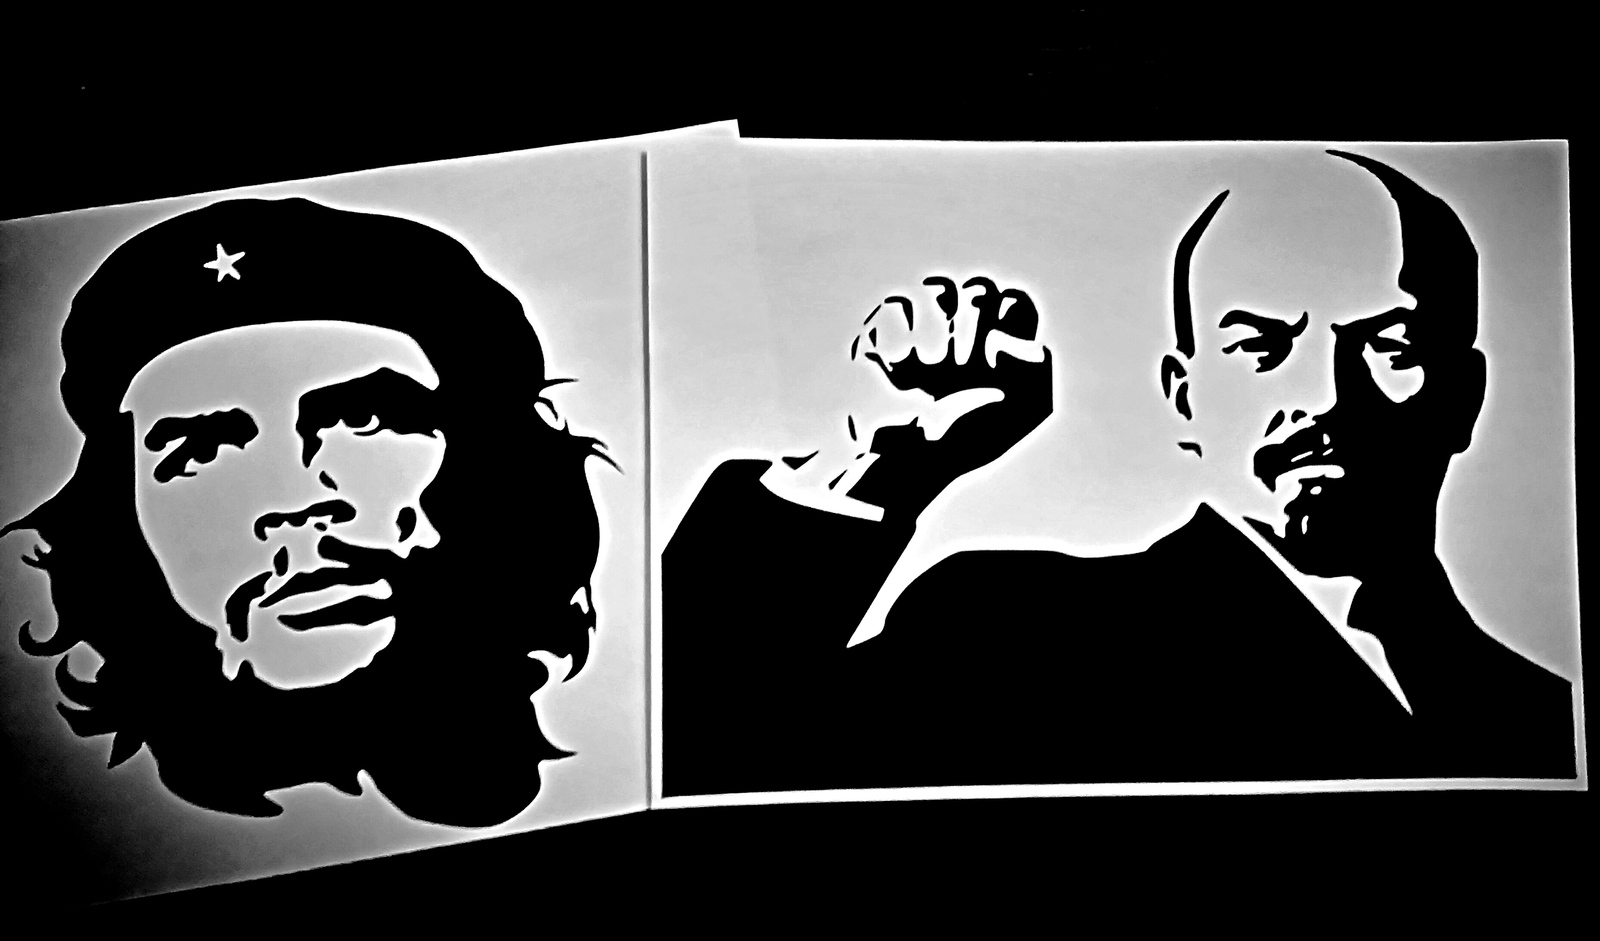 Bring on the revolution! - Revolutionaries, Revolution, Che Guevara, Lenin, My